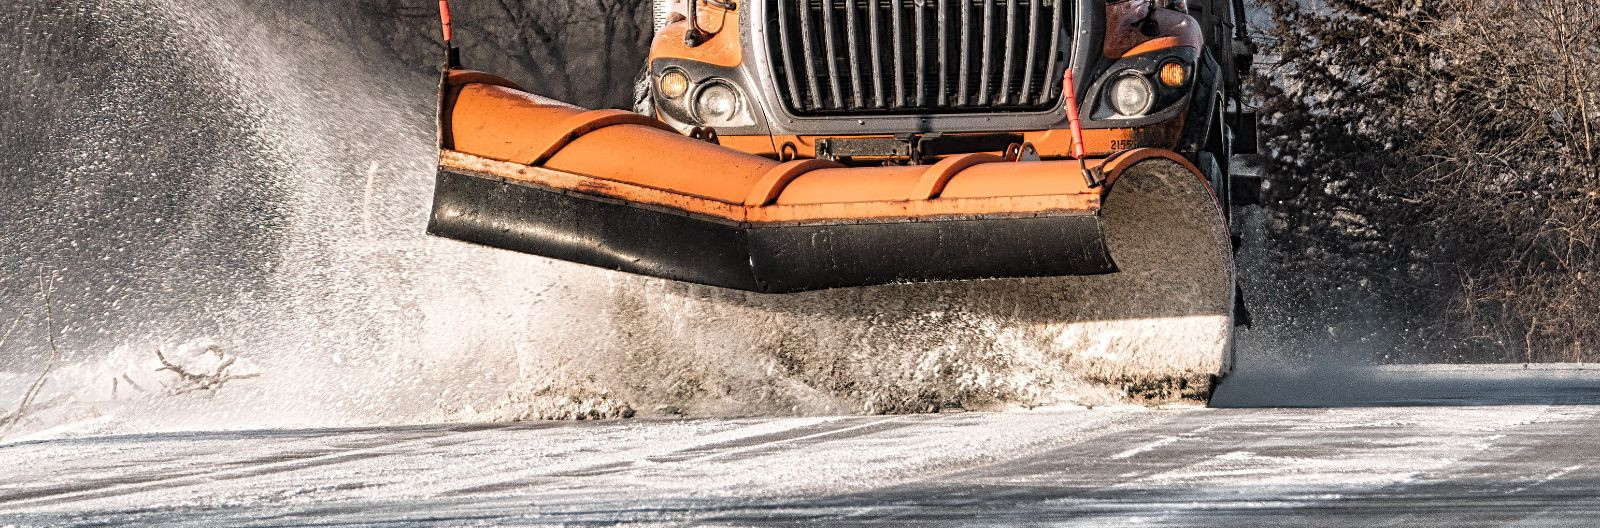 Talvel on lumelükkamine, lumekoristus ja libedusetõrje olulised tegevused, et tagada liiklejate ohutus. Vajaliku tehnika ja personaliga on võimalik hooldada nii